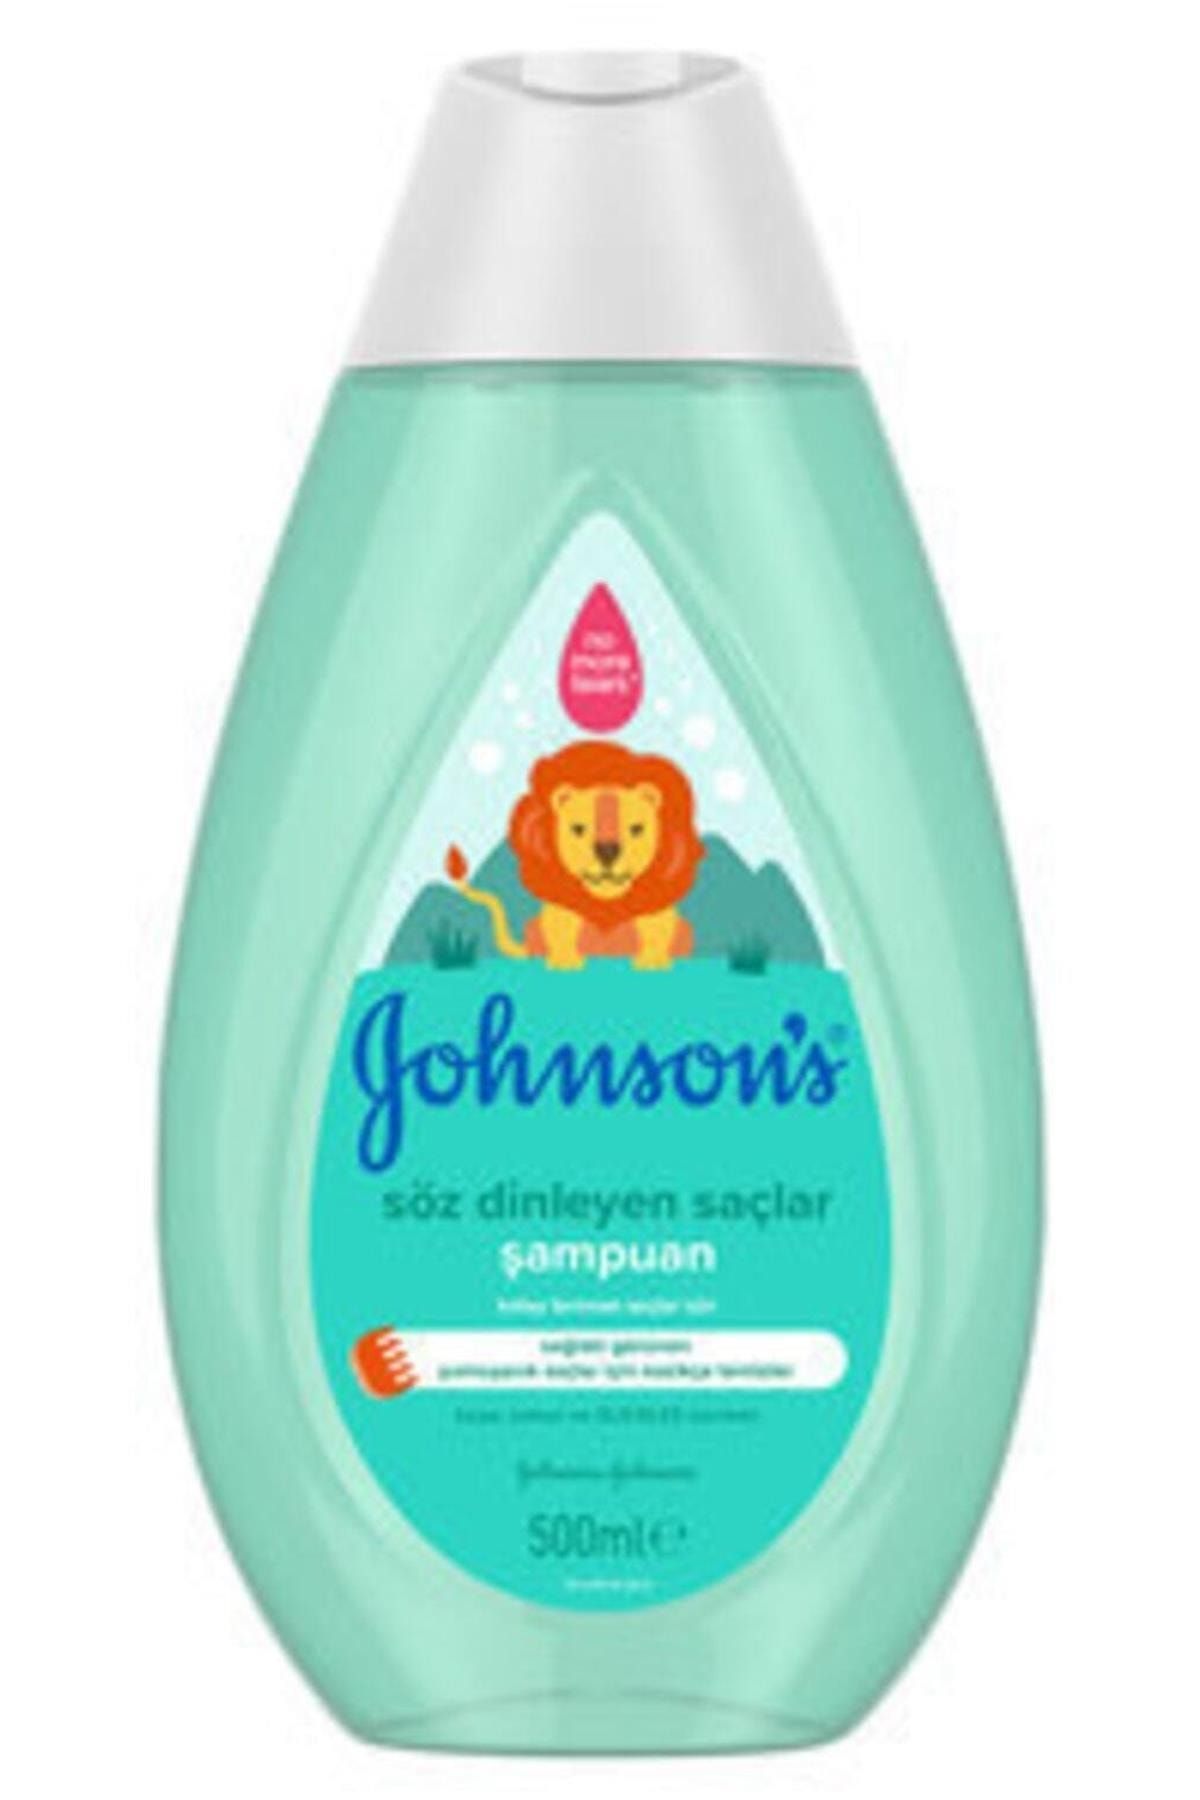 Johnson's Baby Johnson's Baby Söz Dinleyen Saçlar Şampuan 500 ml